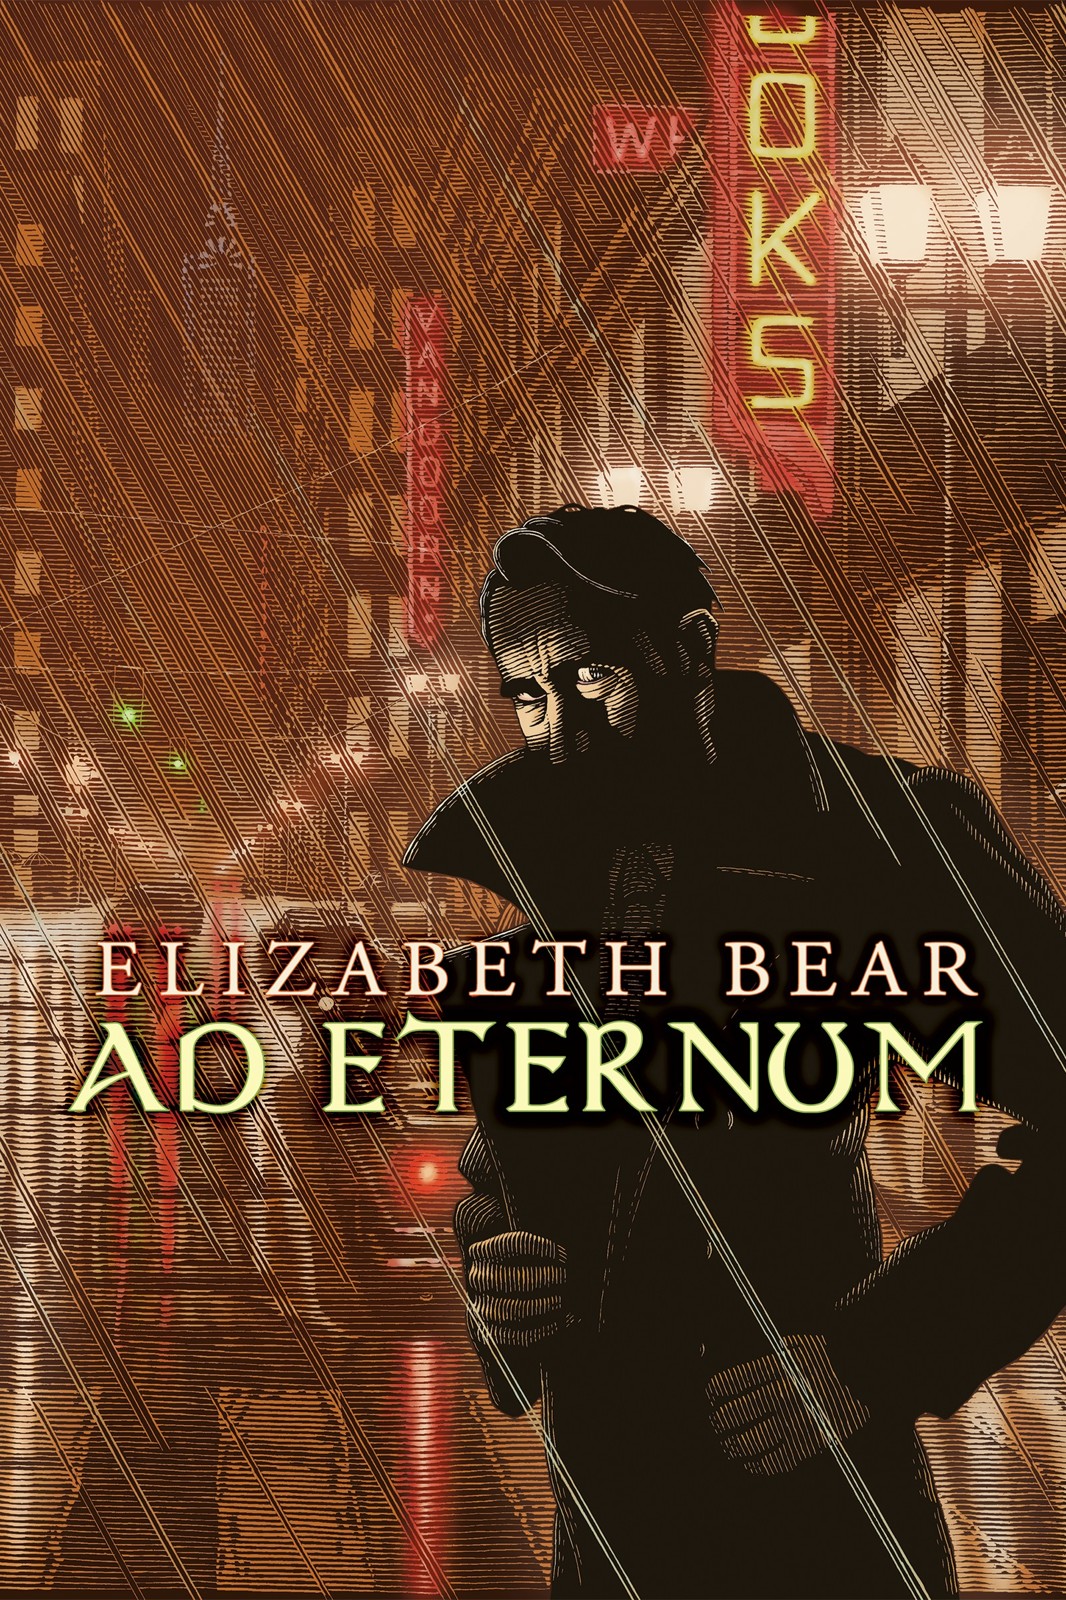 Ad Eternum by Elizabeth Bear